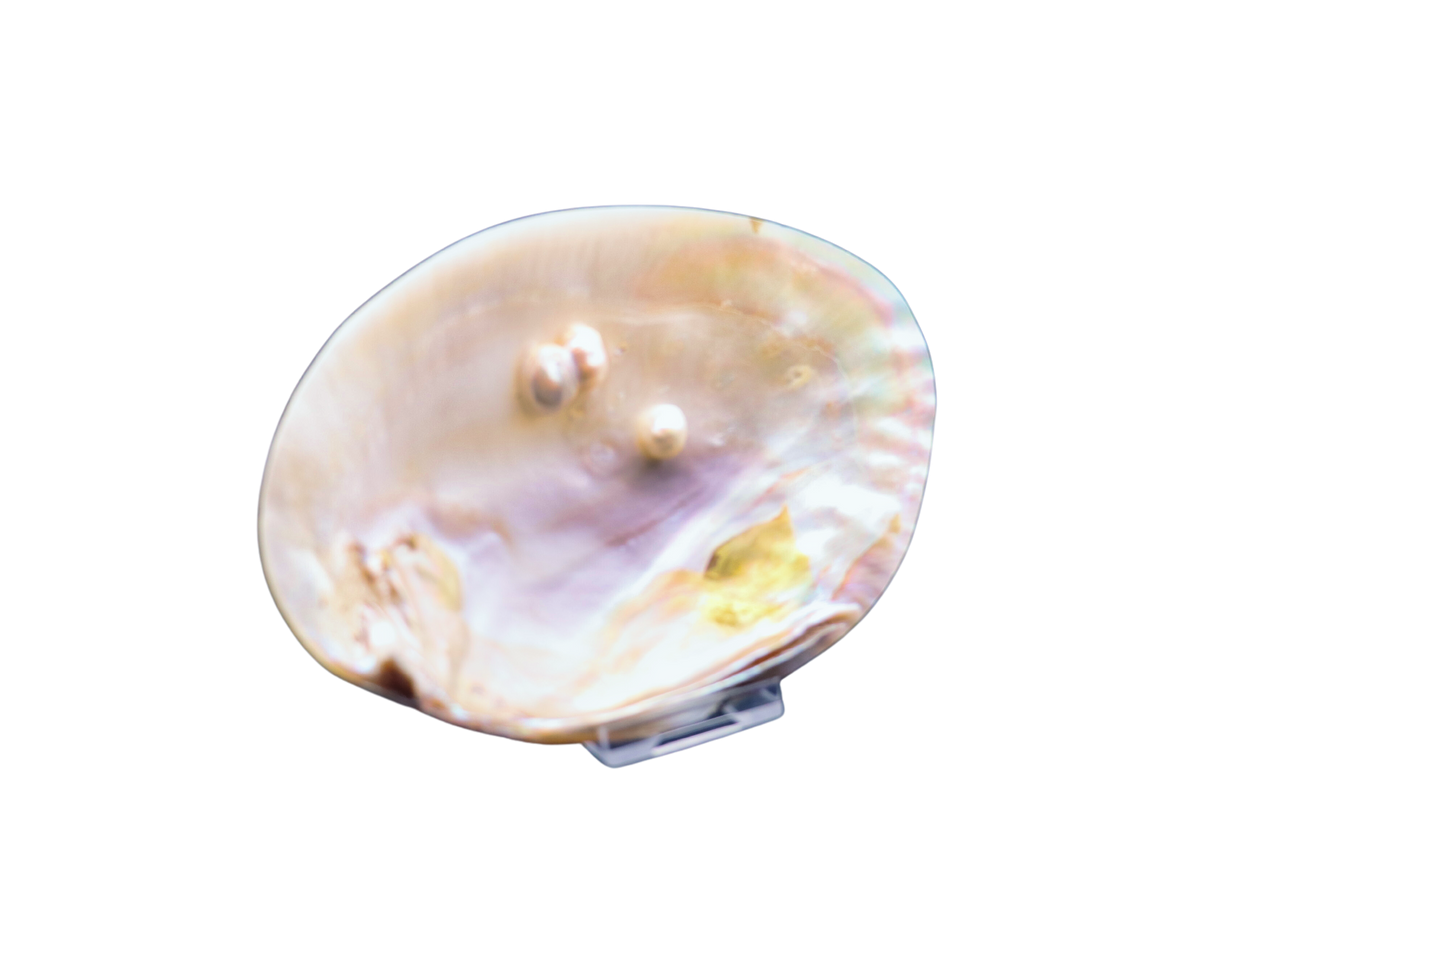 Muschel mit Perlen: verborgener Schatz aus der Tiefe #3